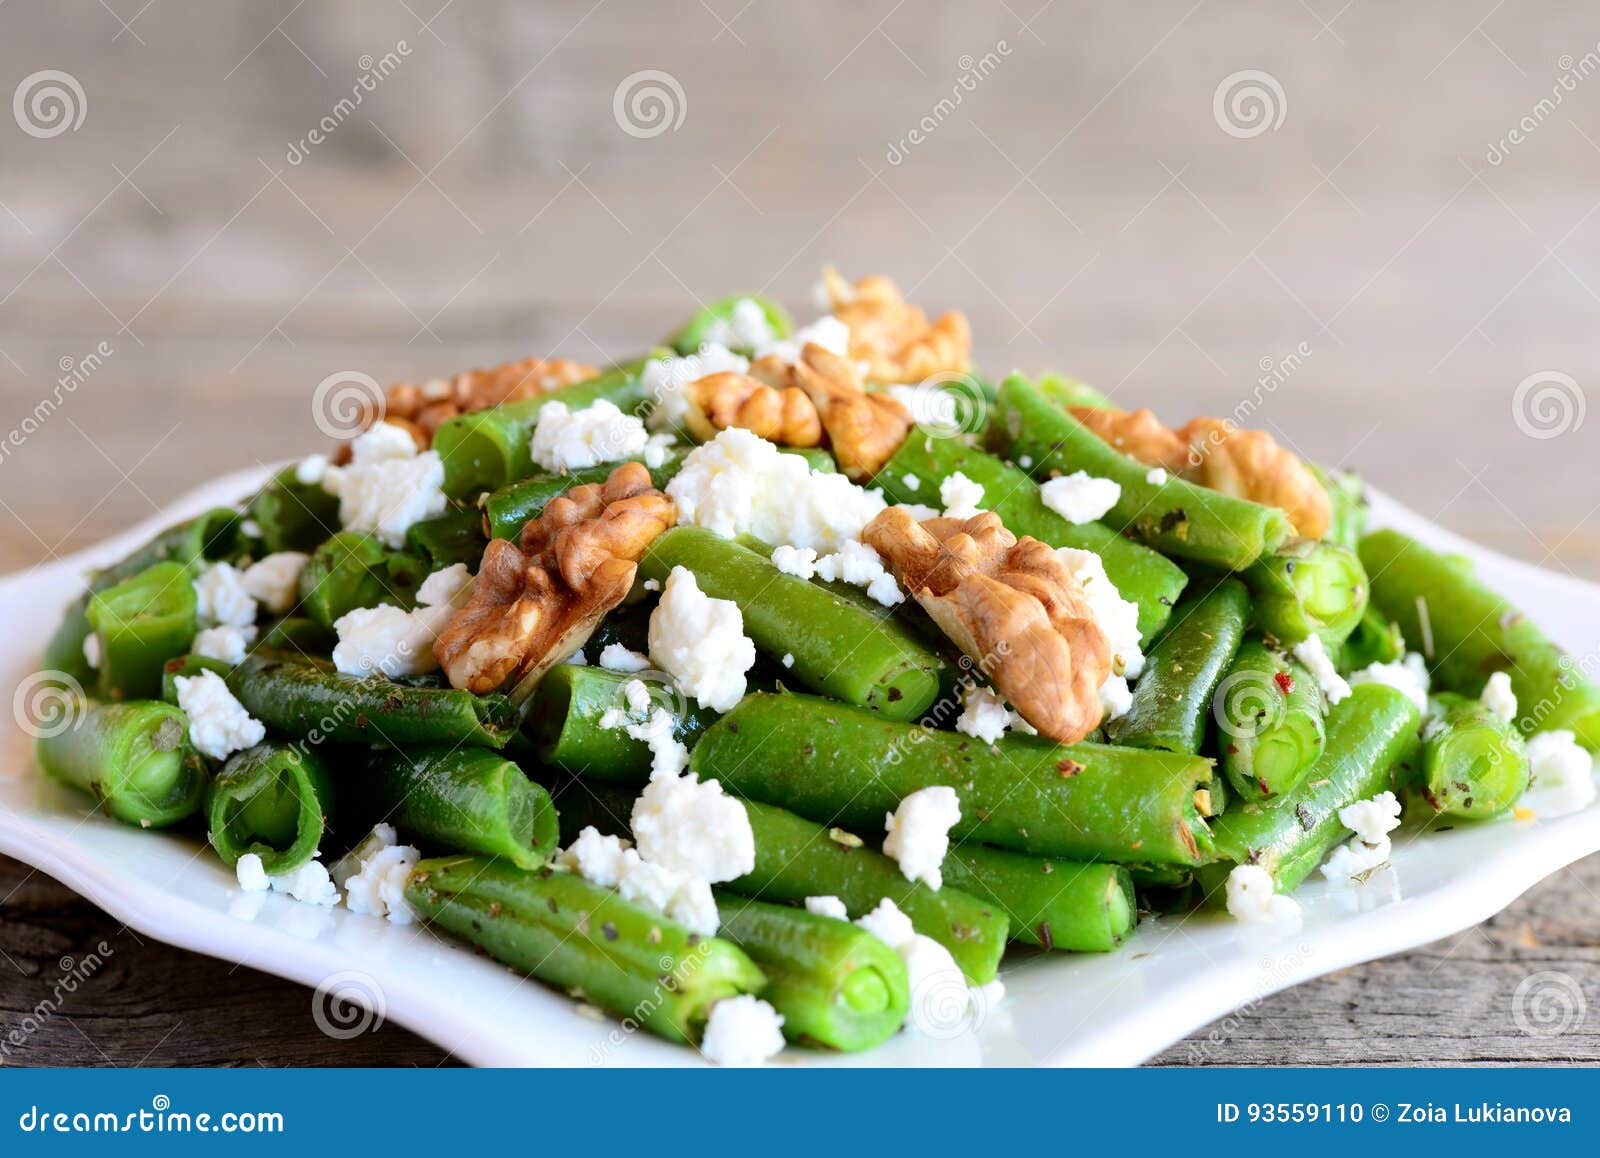 Salade de haricots verts au chèvre et aux noix - Recette